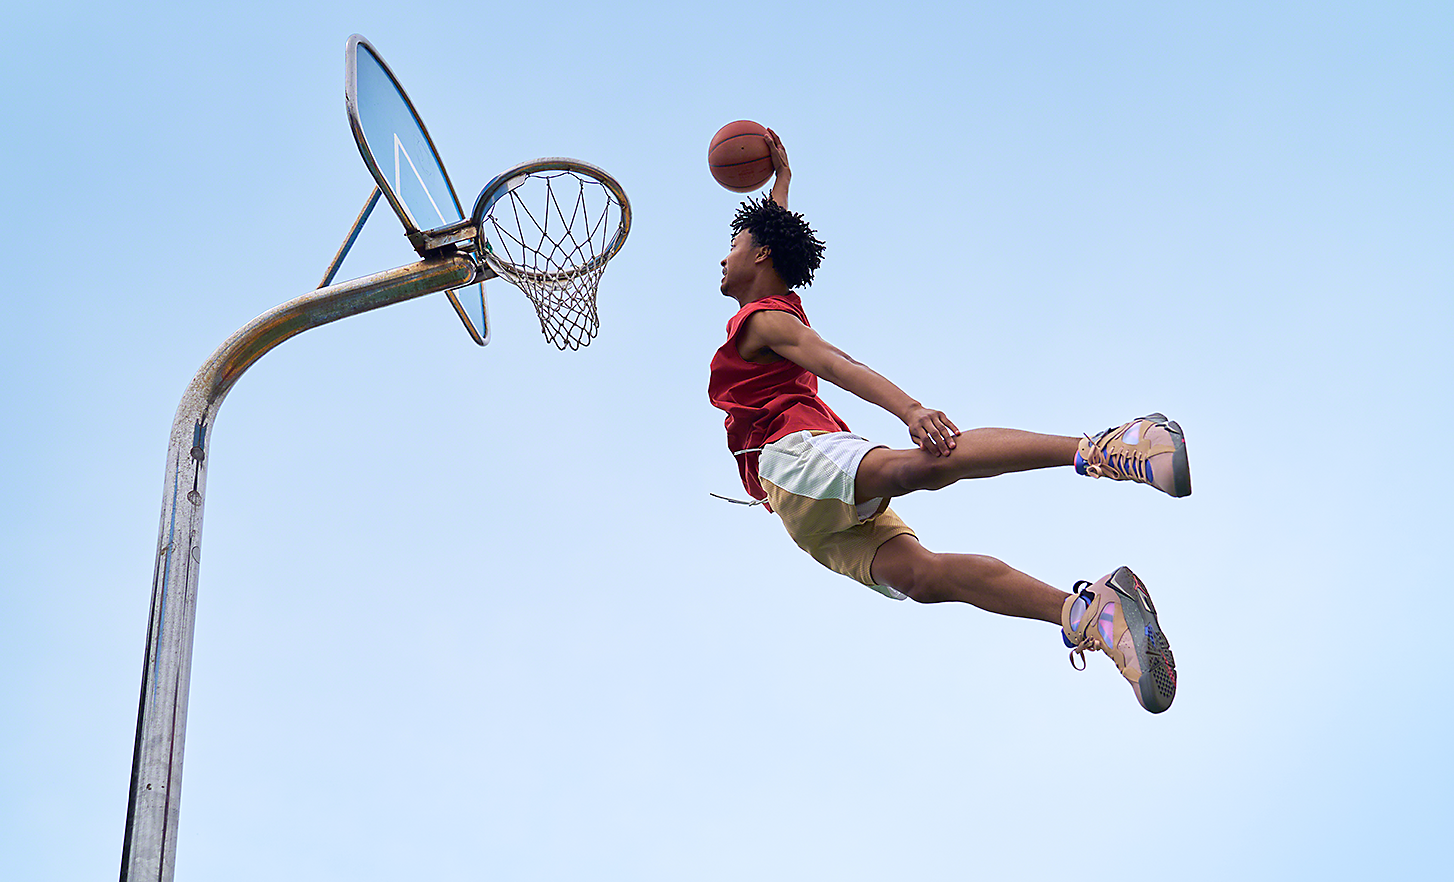 Cliché spectaculaire d'un basketteur en plein saut prêt à réaliser un slam dunk